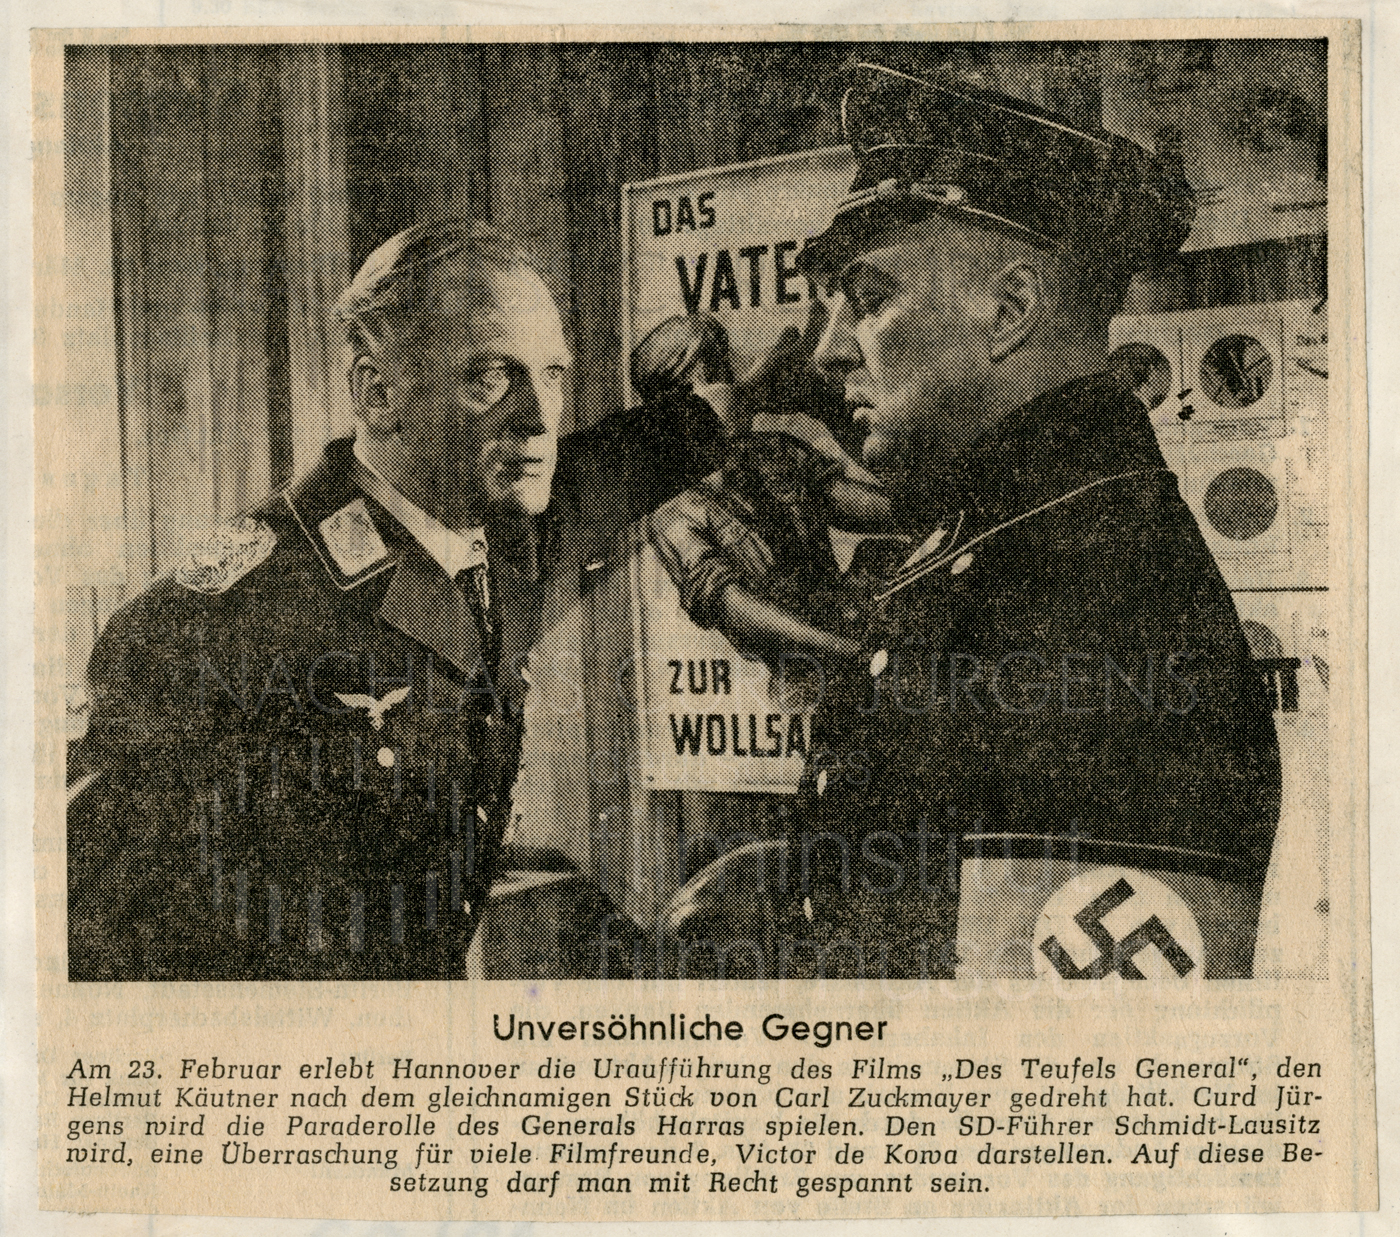 "Unversönliche Gegner". In: Hannoversche Allgemeine Zeitung, 19.2.1955